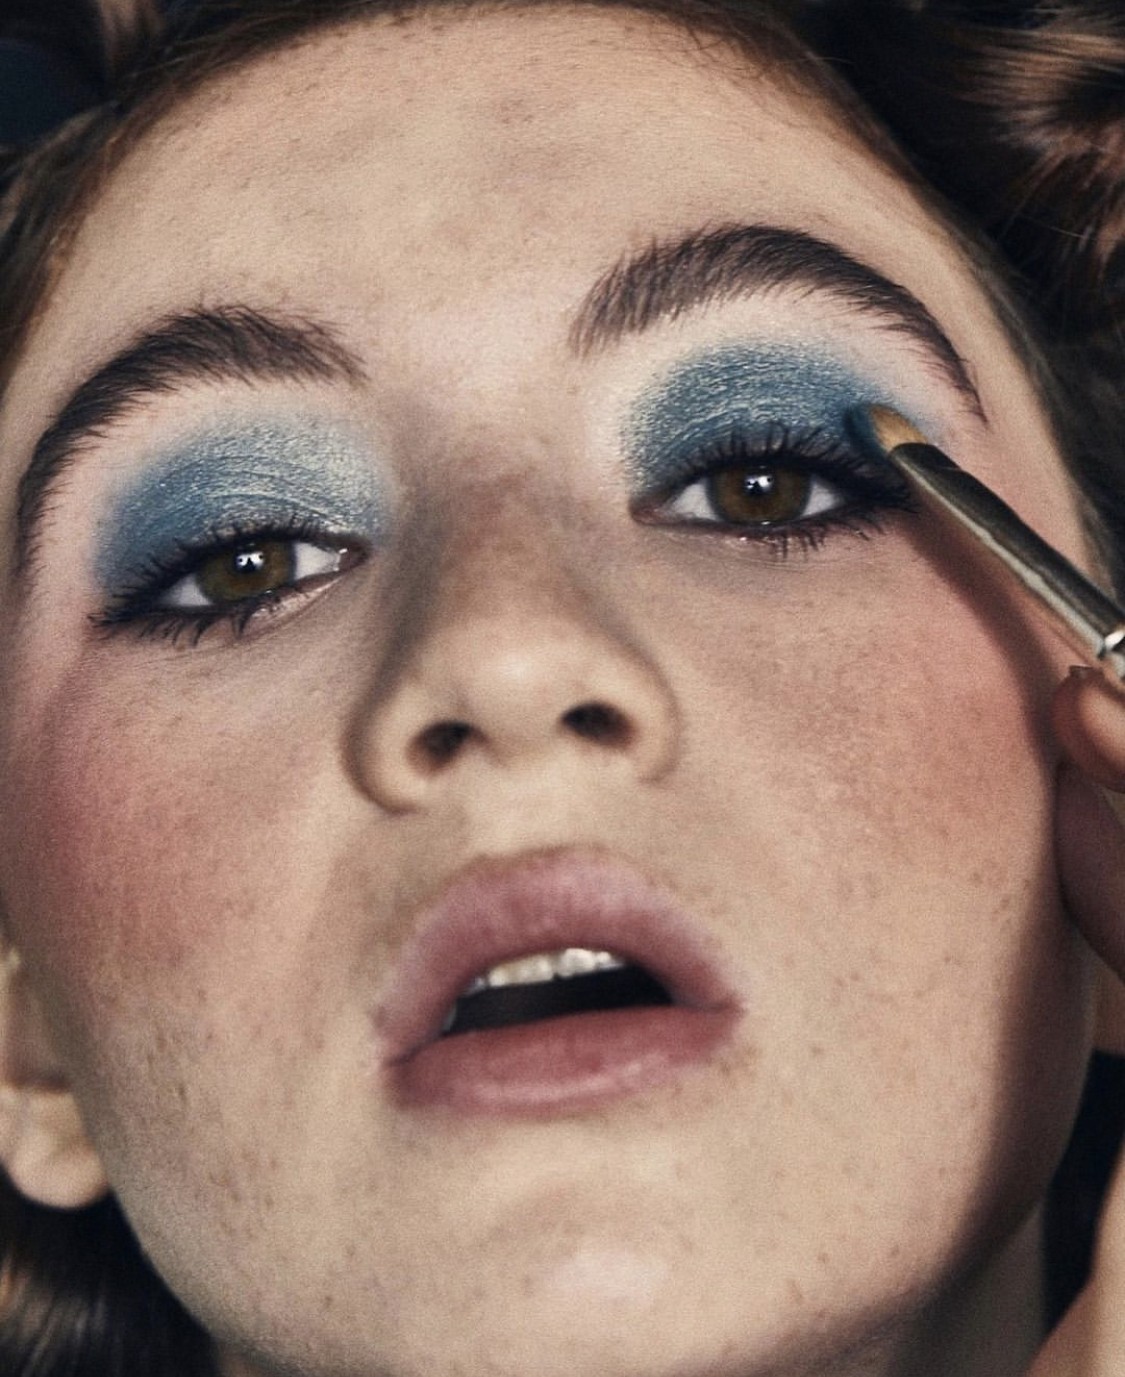 Sombras azuis são o novo hit dos visuais de maquiagem (Foto: Reprodução/Instagram @rafaellacrepaldi)